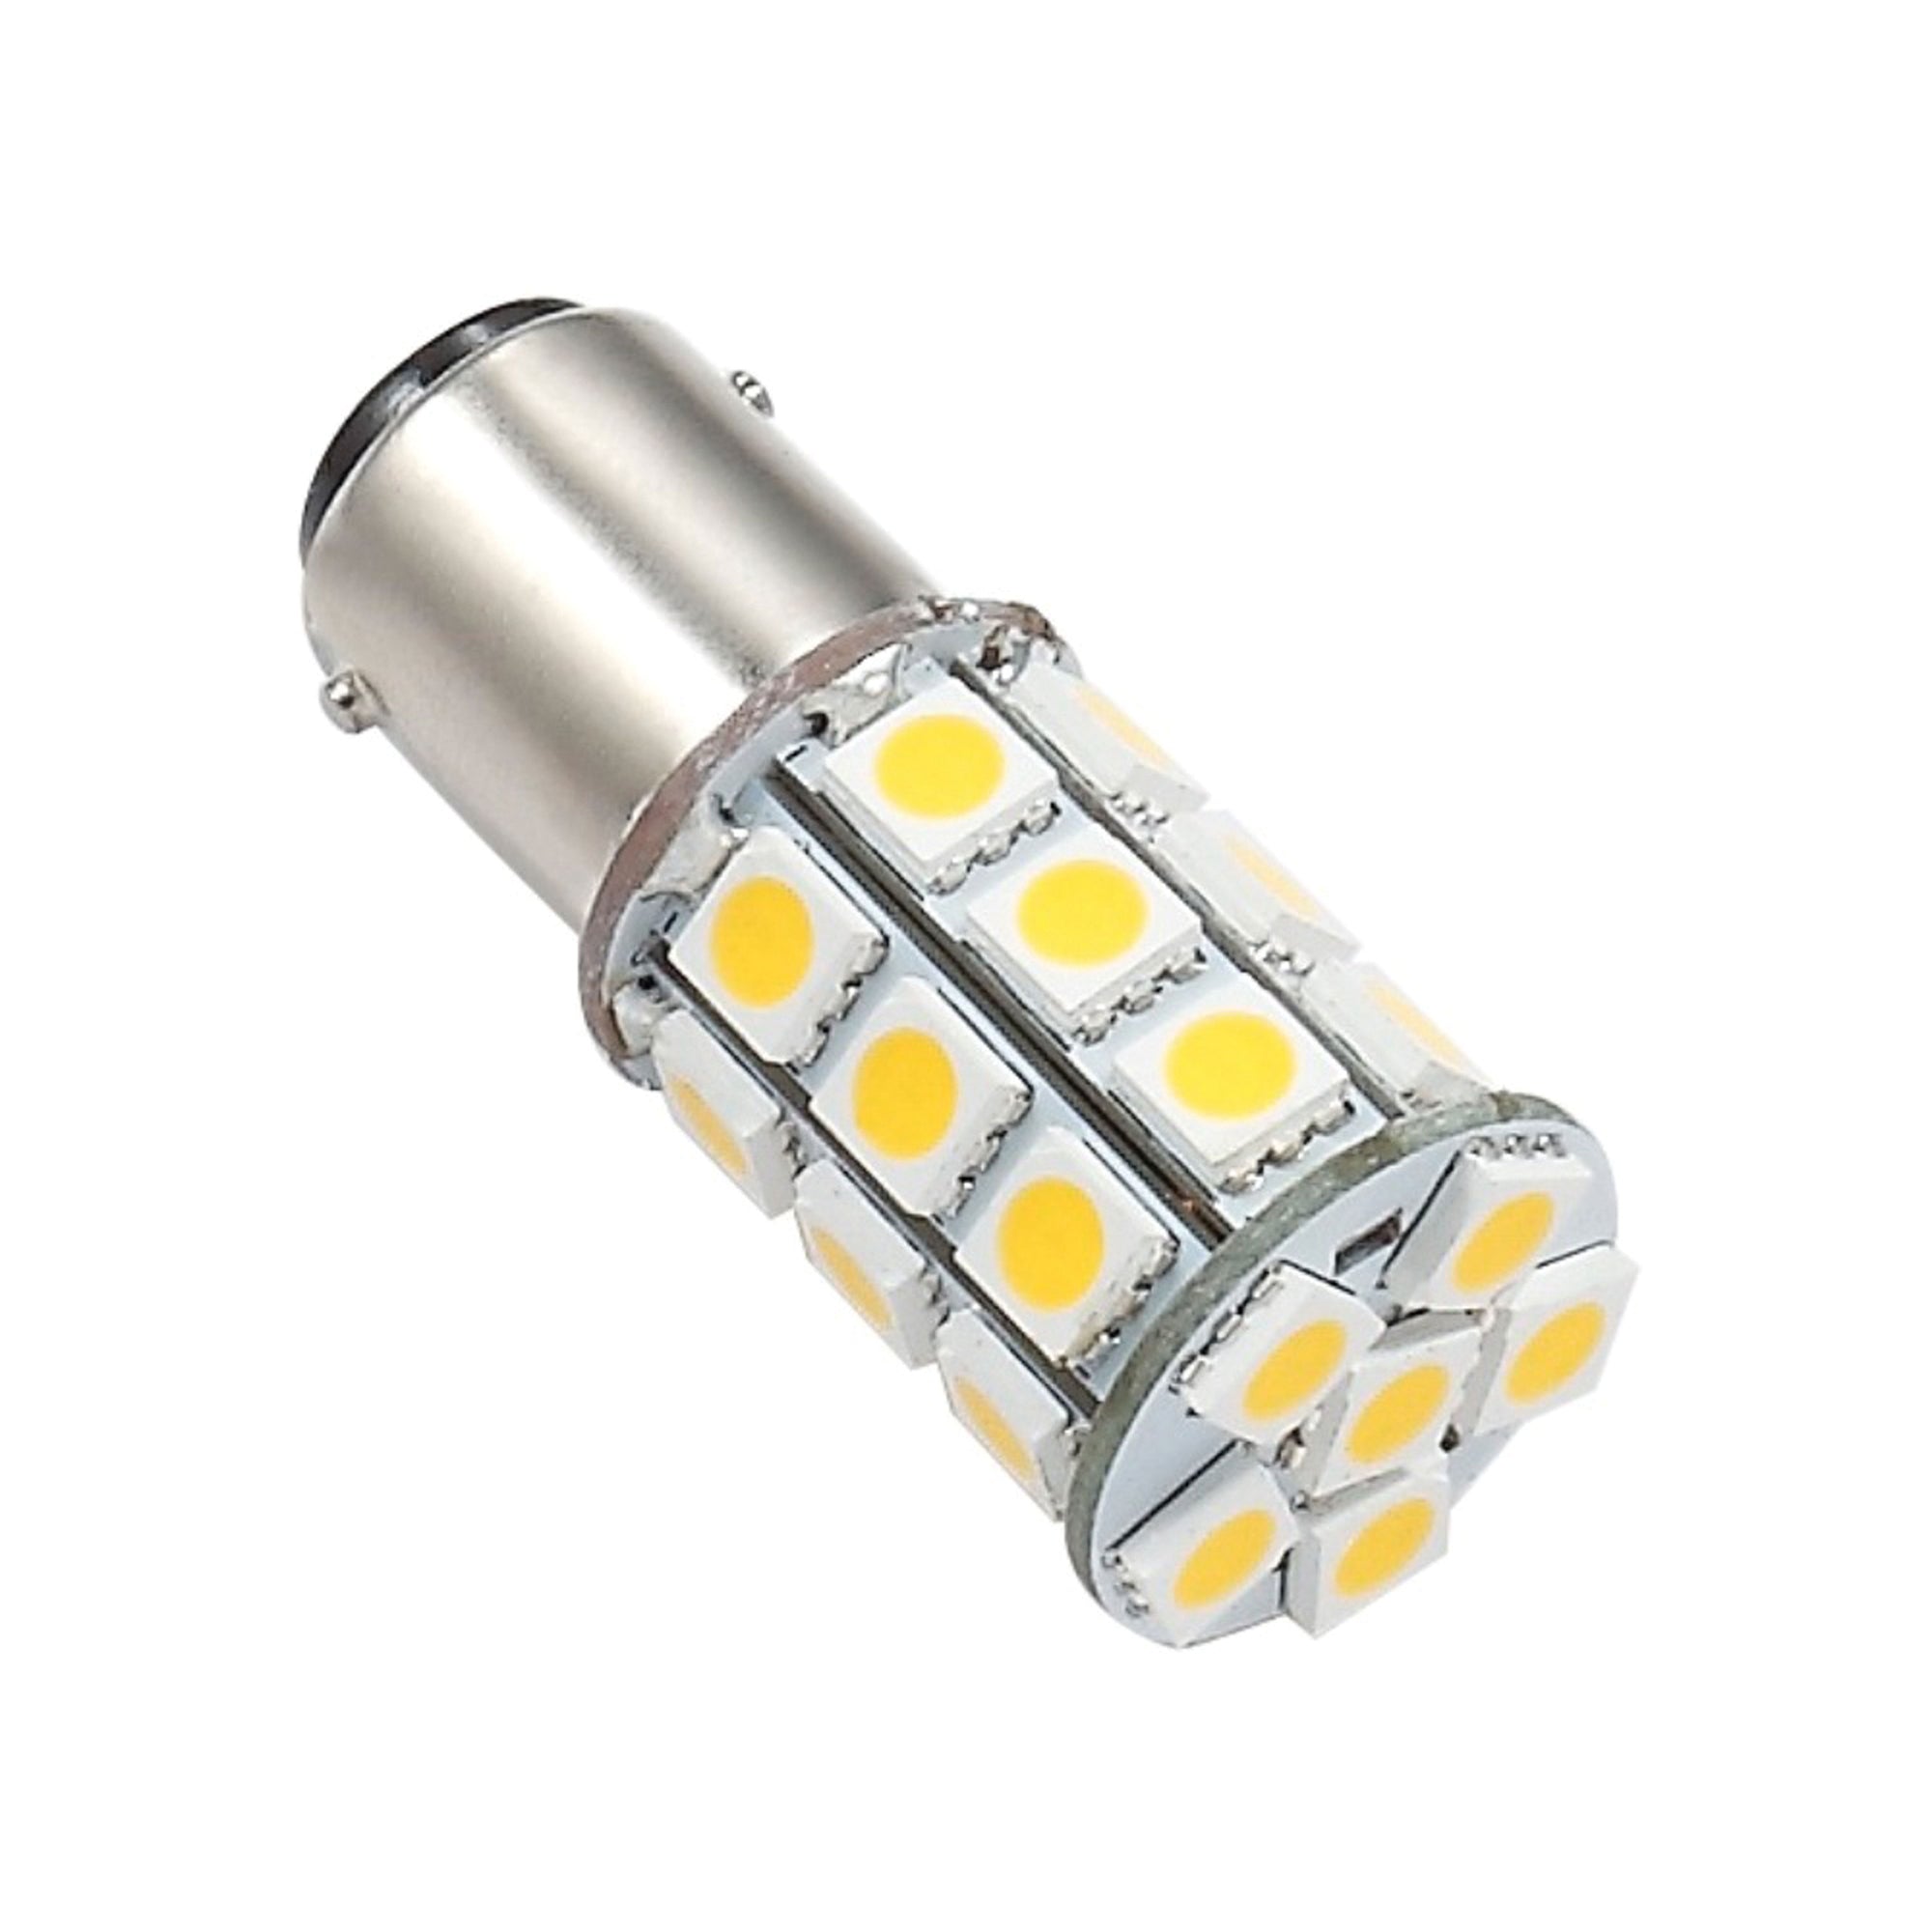 Ming's Mark 25006V Green LongLife 12V LED Tower Light Bulb with 1076 Base - 250 Lumens, Natural White